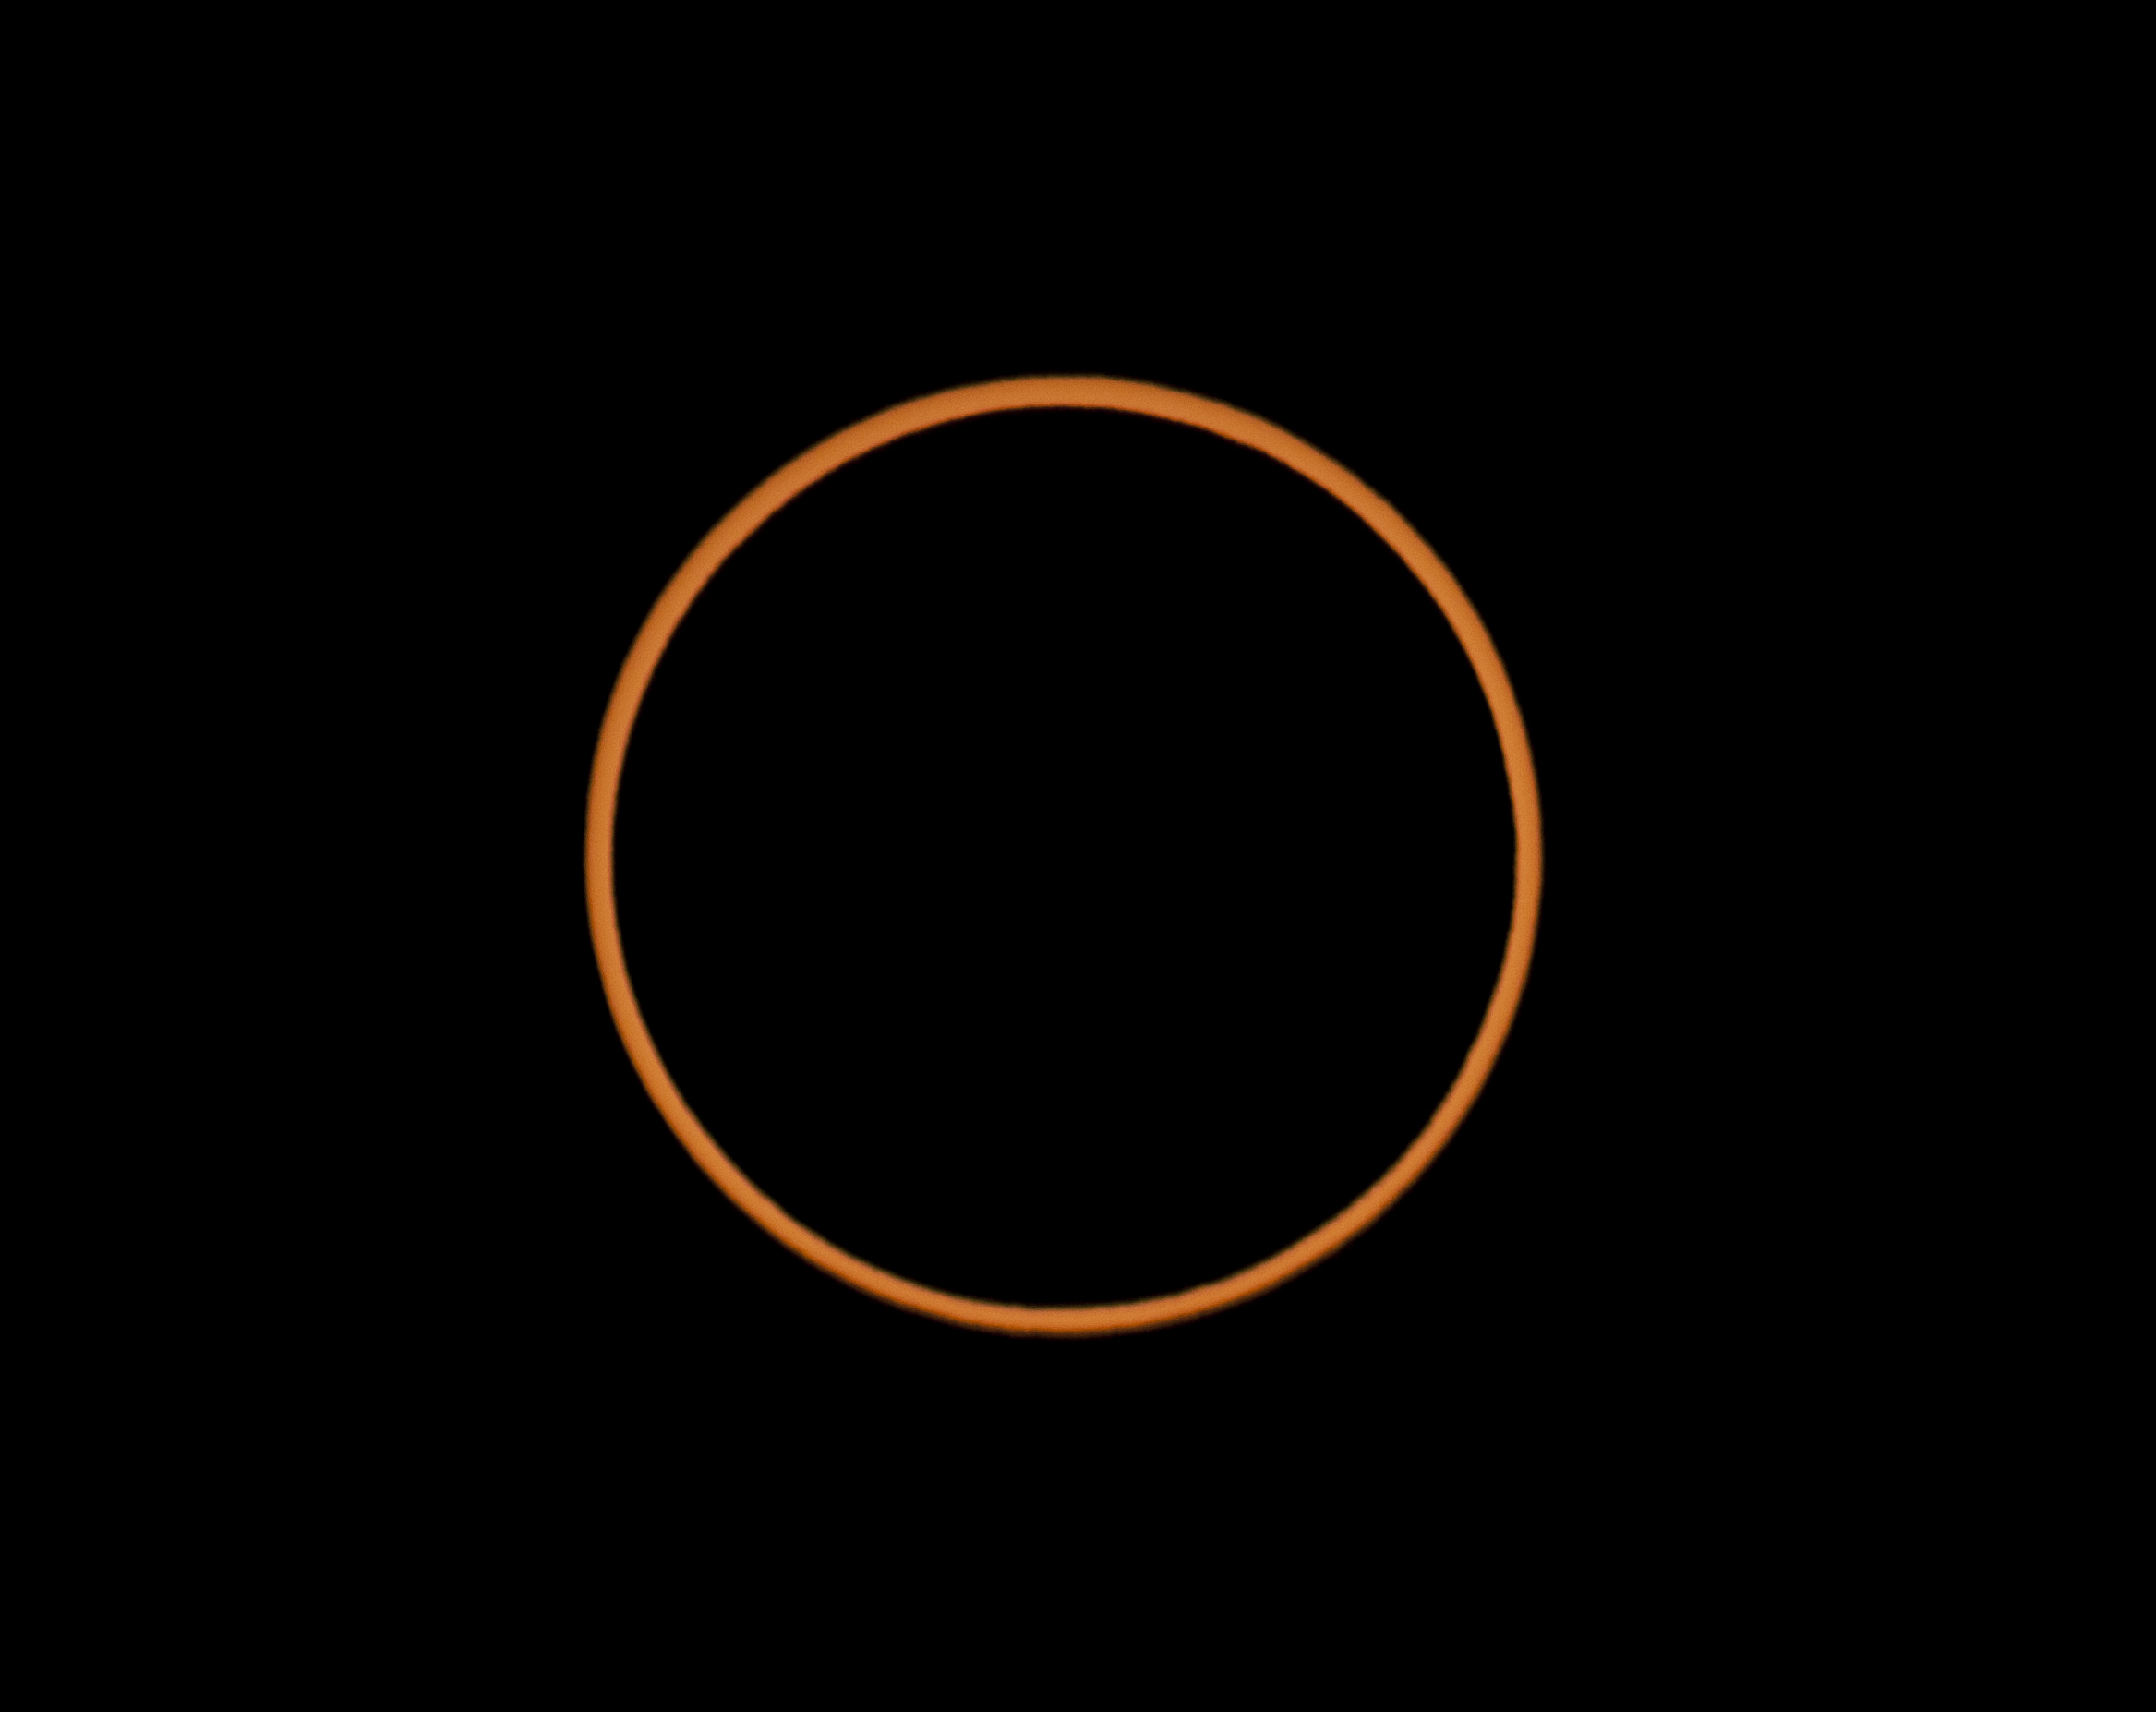 fig 8 - annular eclipse